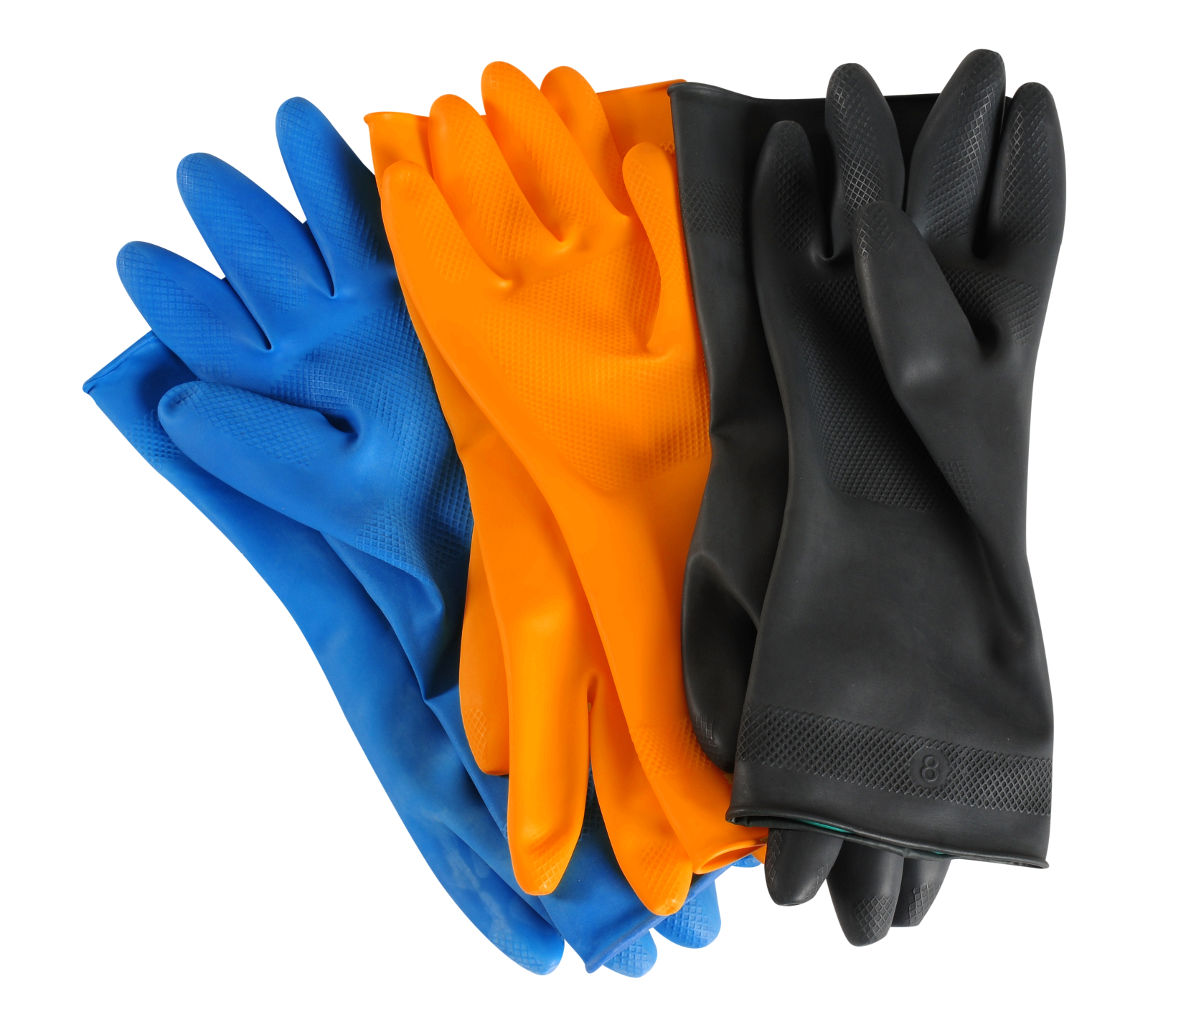 Qué guantes de trabajo debo comprar?